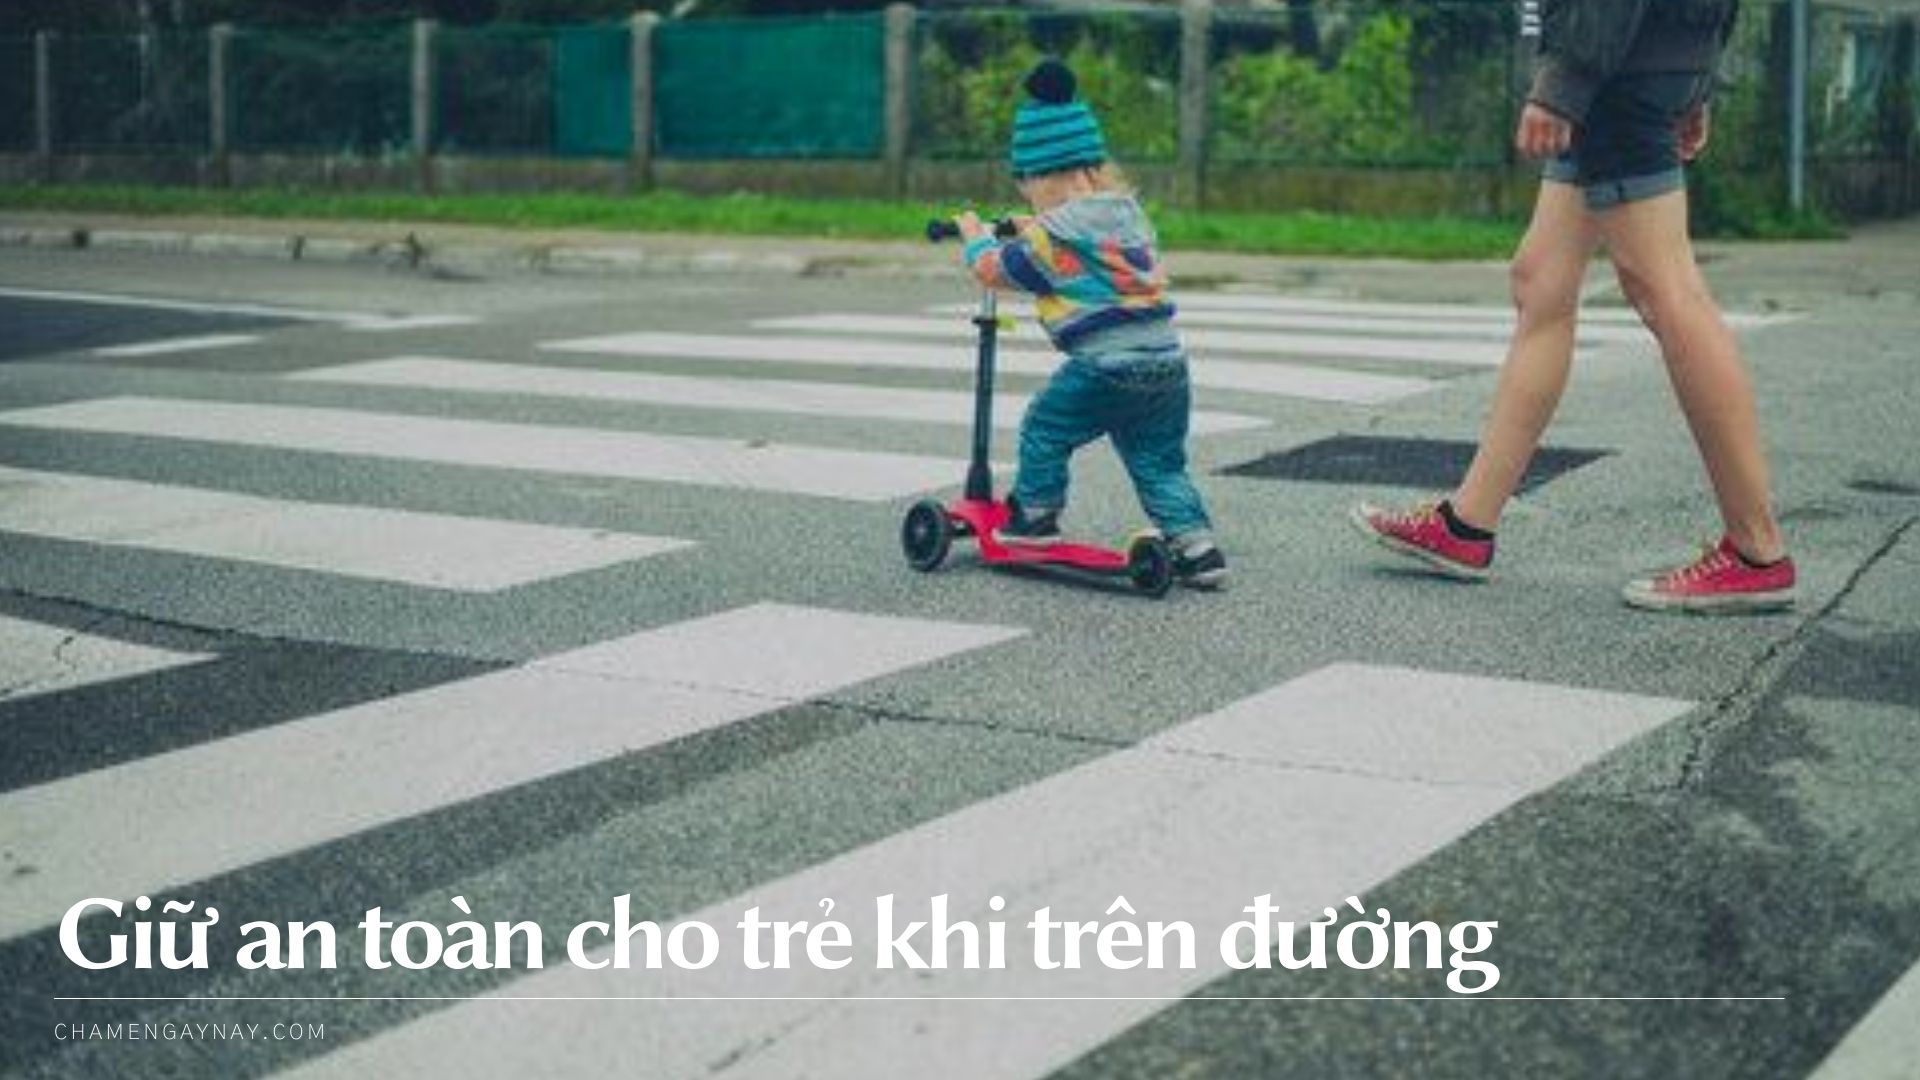 Giữ an toàn cho trẻ khi ra đường